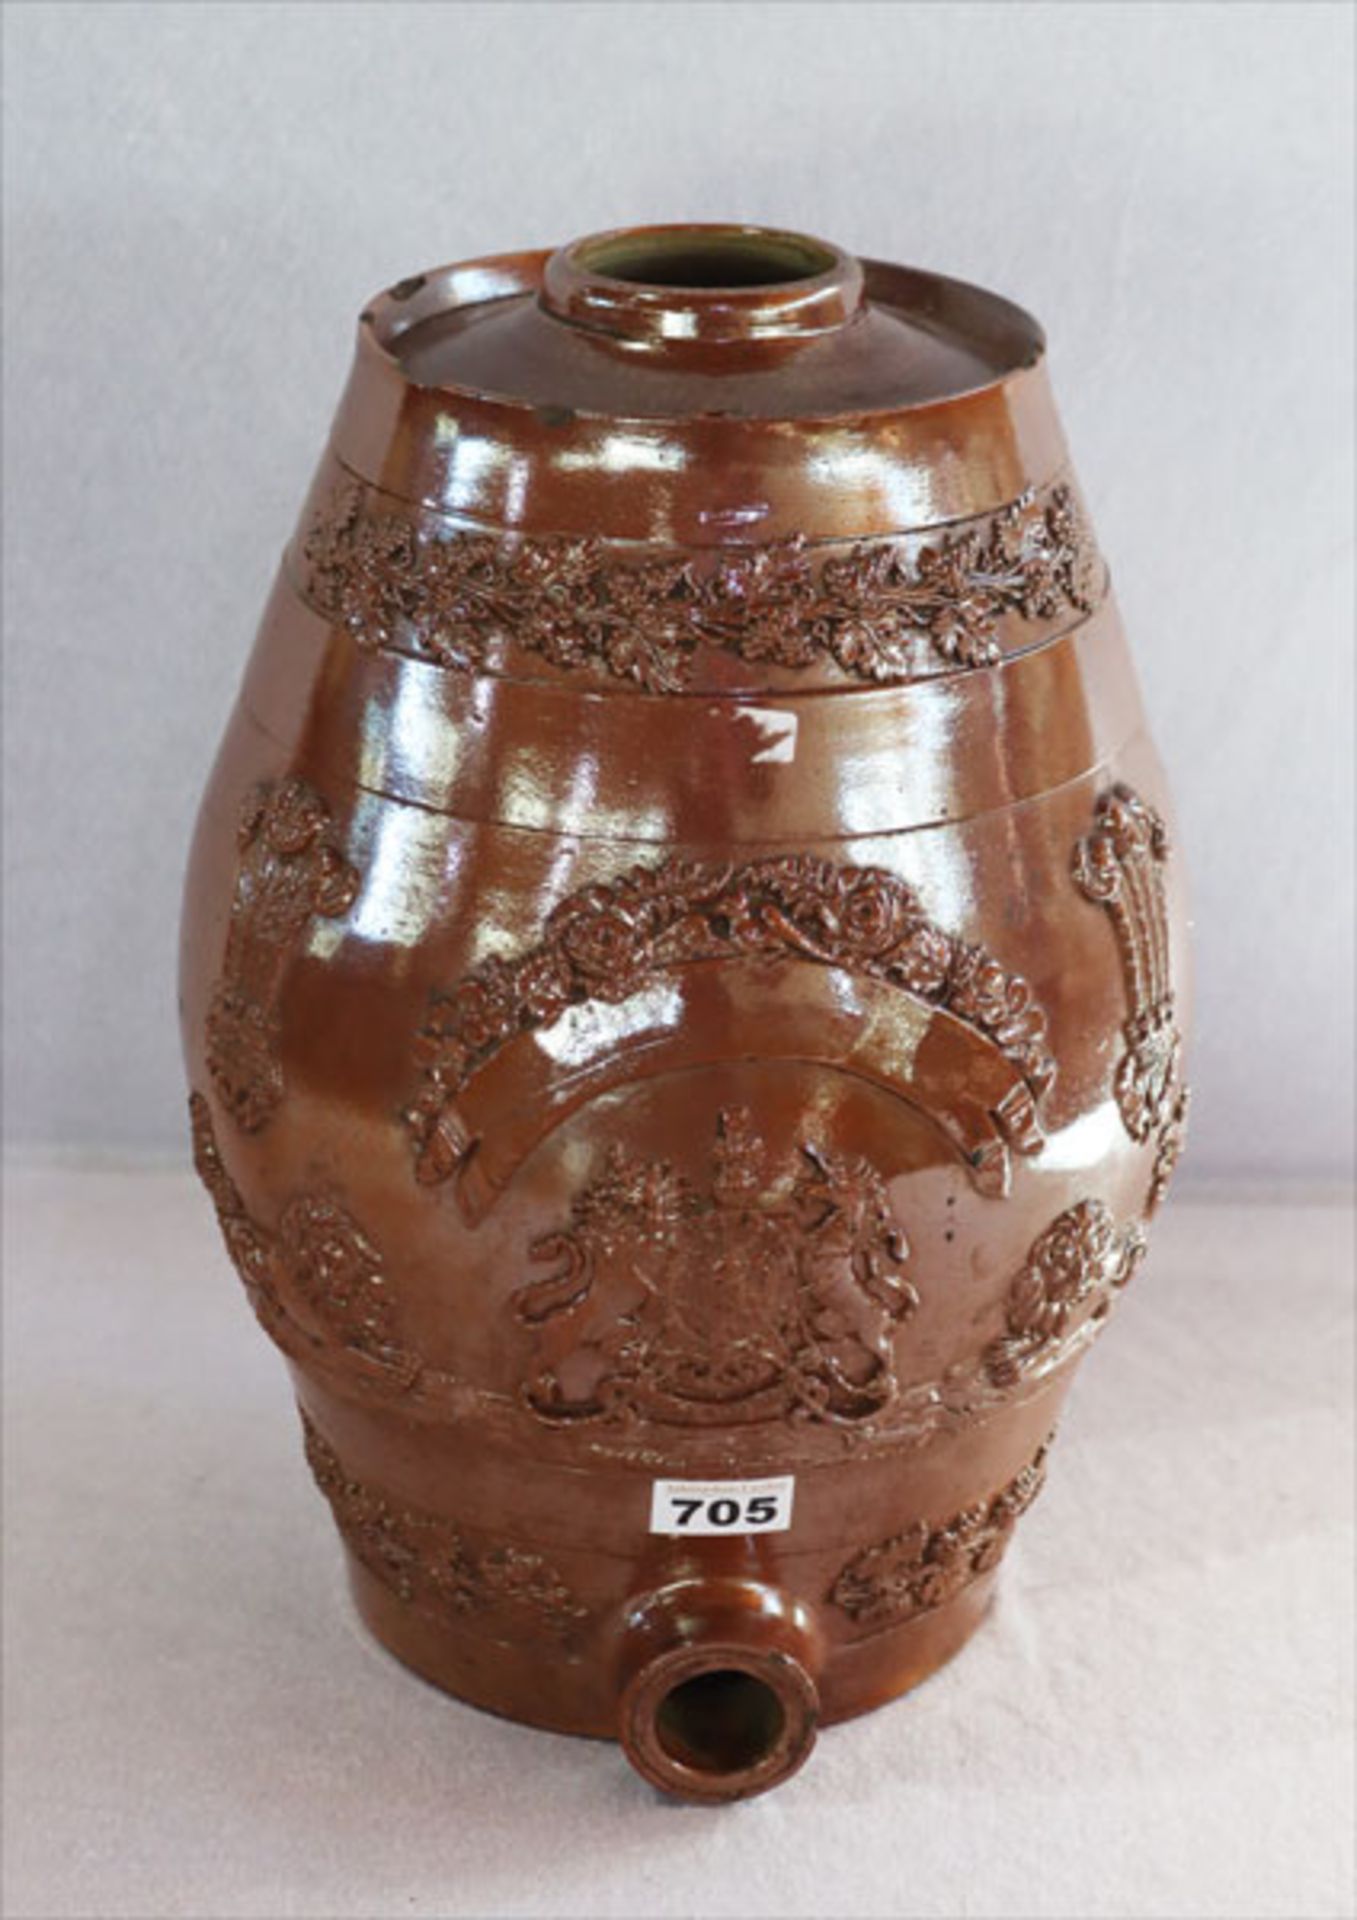 Keramik Wein-Faß mit Reliefdekor, Korken fehlt, H 44 cm, D 23 cm, Alters- und Gebrauchsspuren